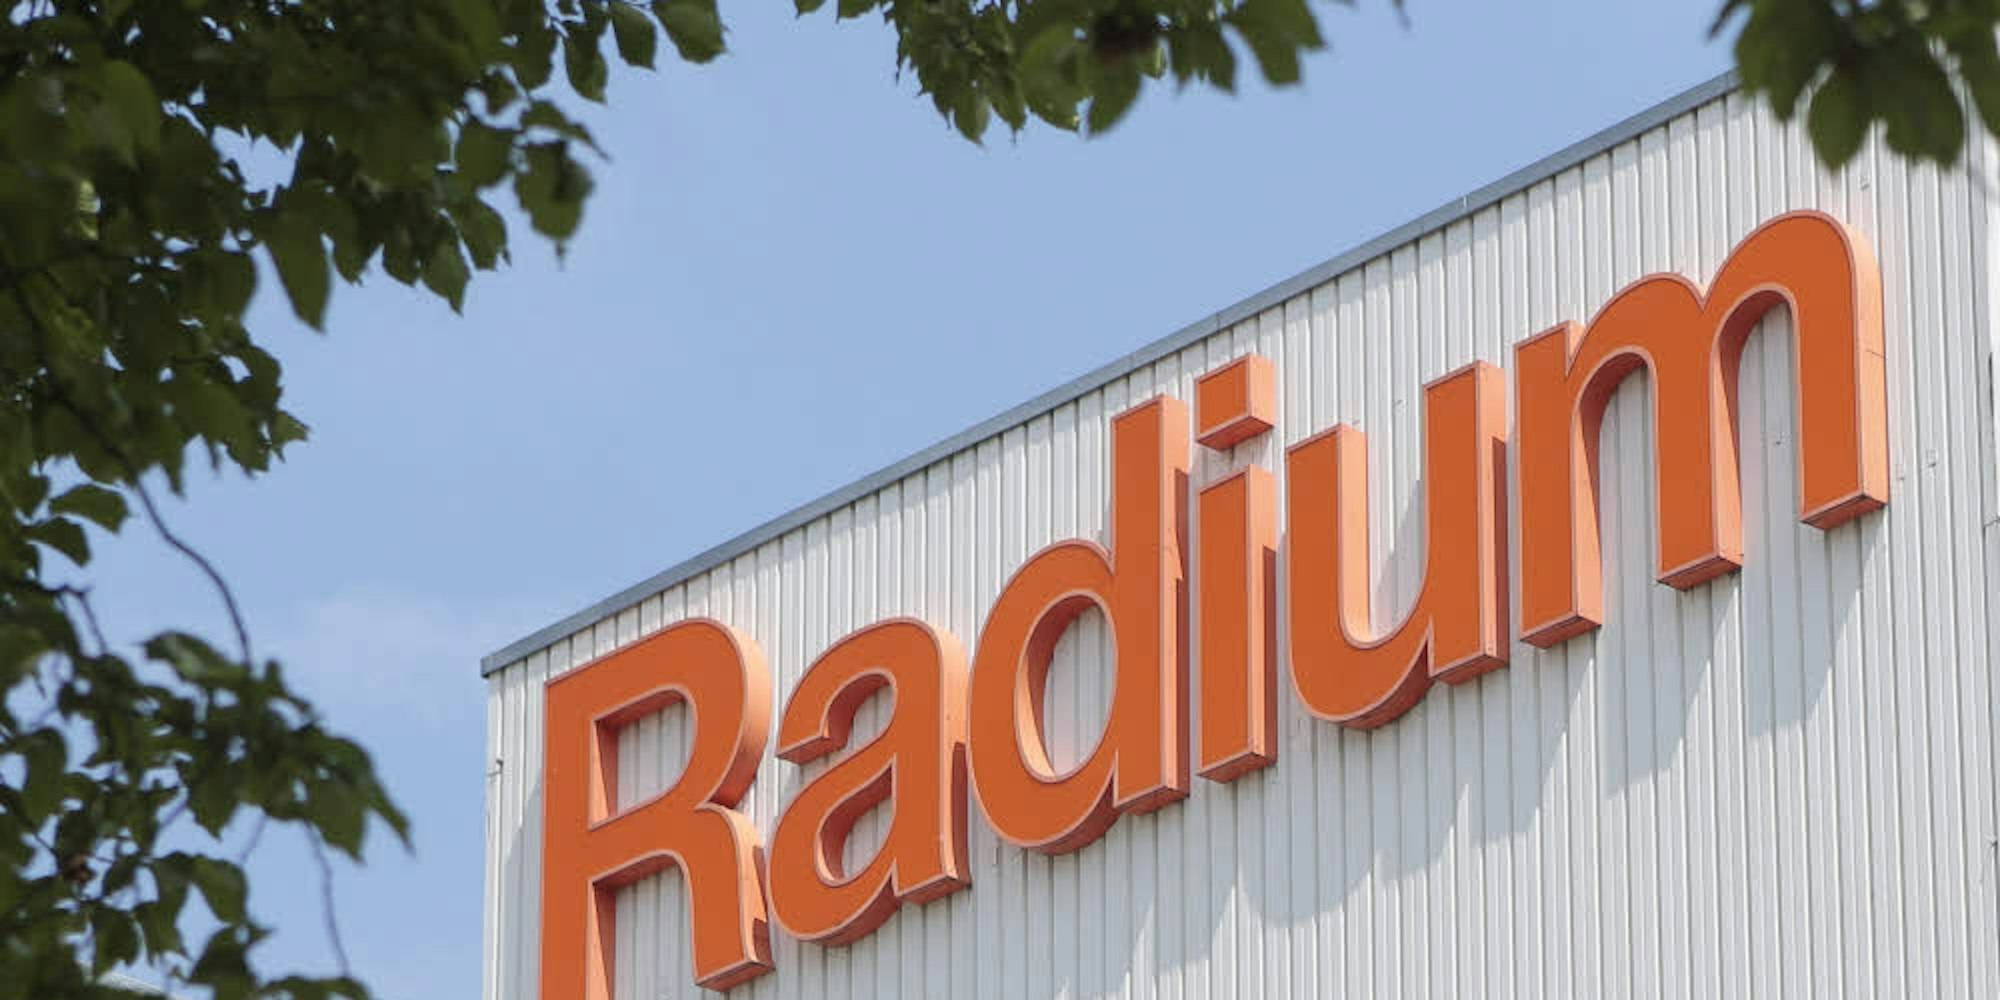 Radium in Wipperfürth gehört zur Ledvance GmbH. Die hat jetzt nicht mehr drei, sondern nur noch einen Eigentümer – den chinesischen Lichtkonzern MLS.